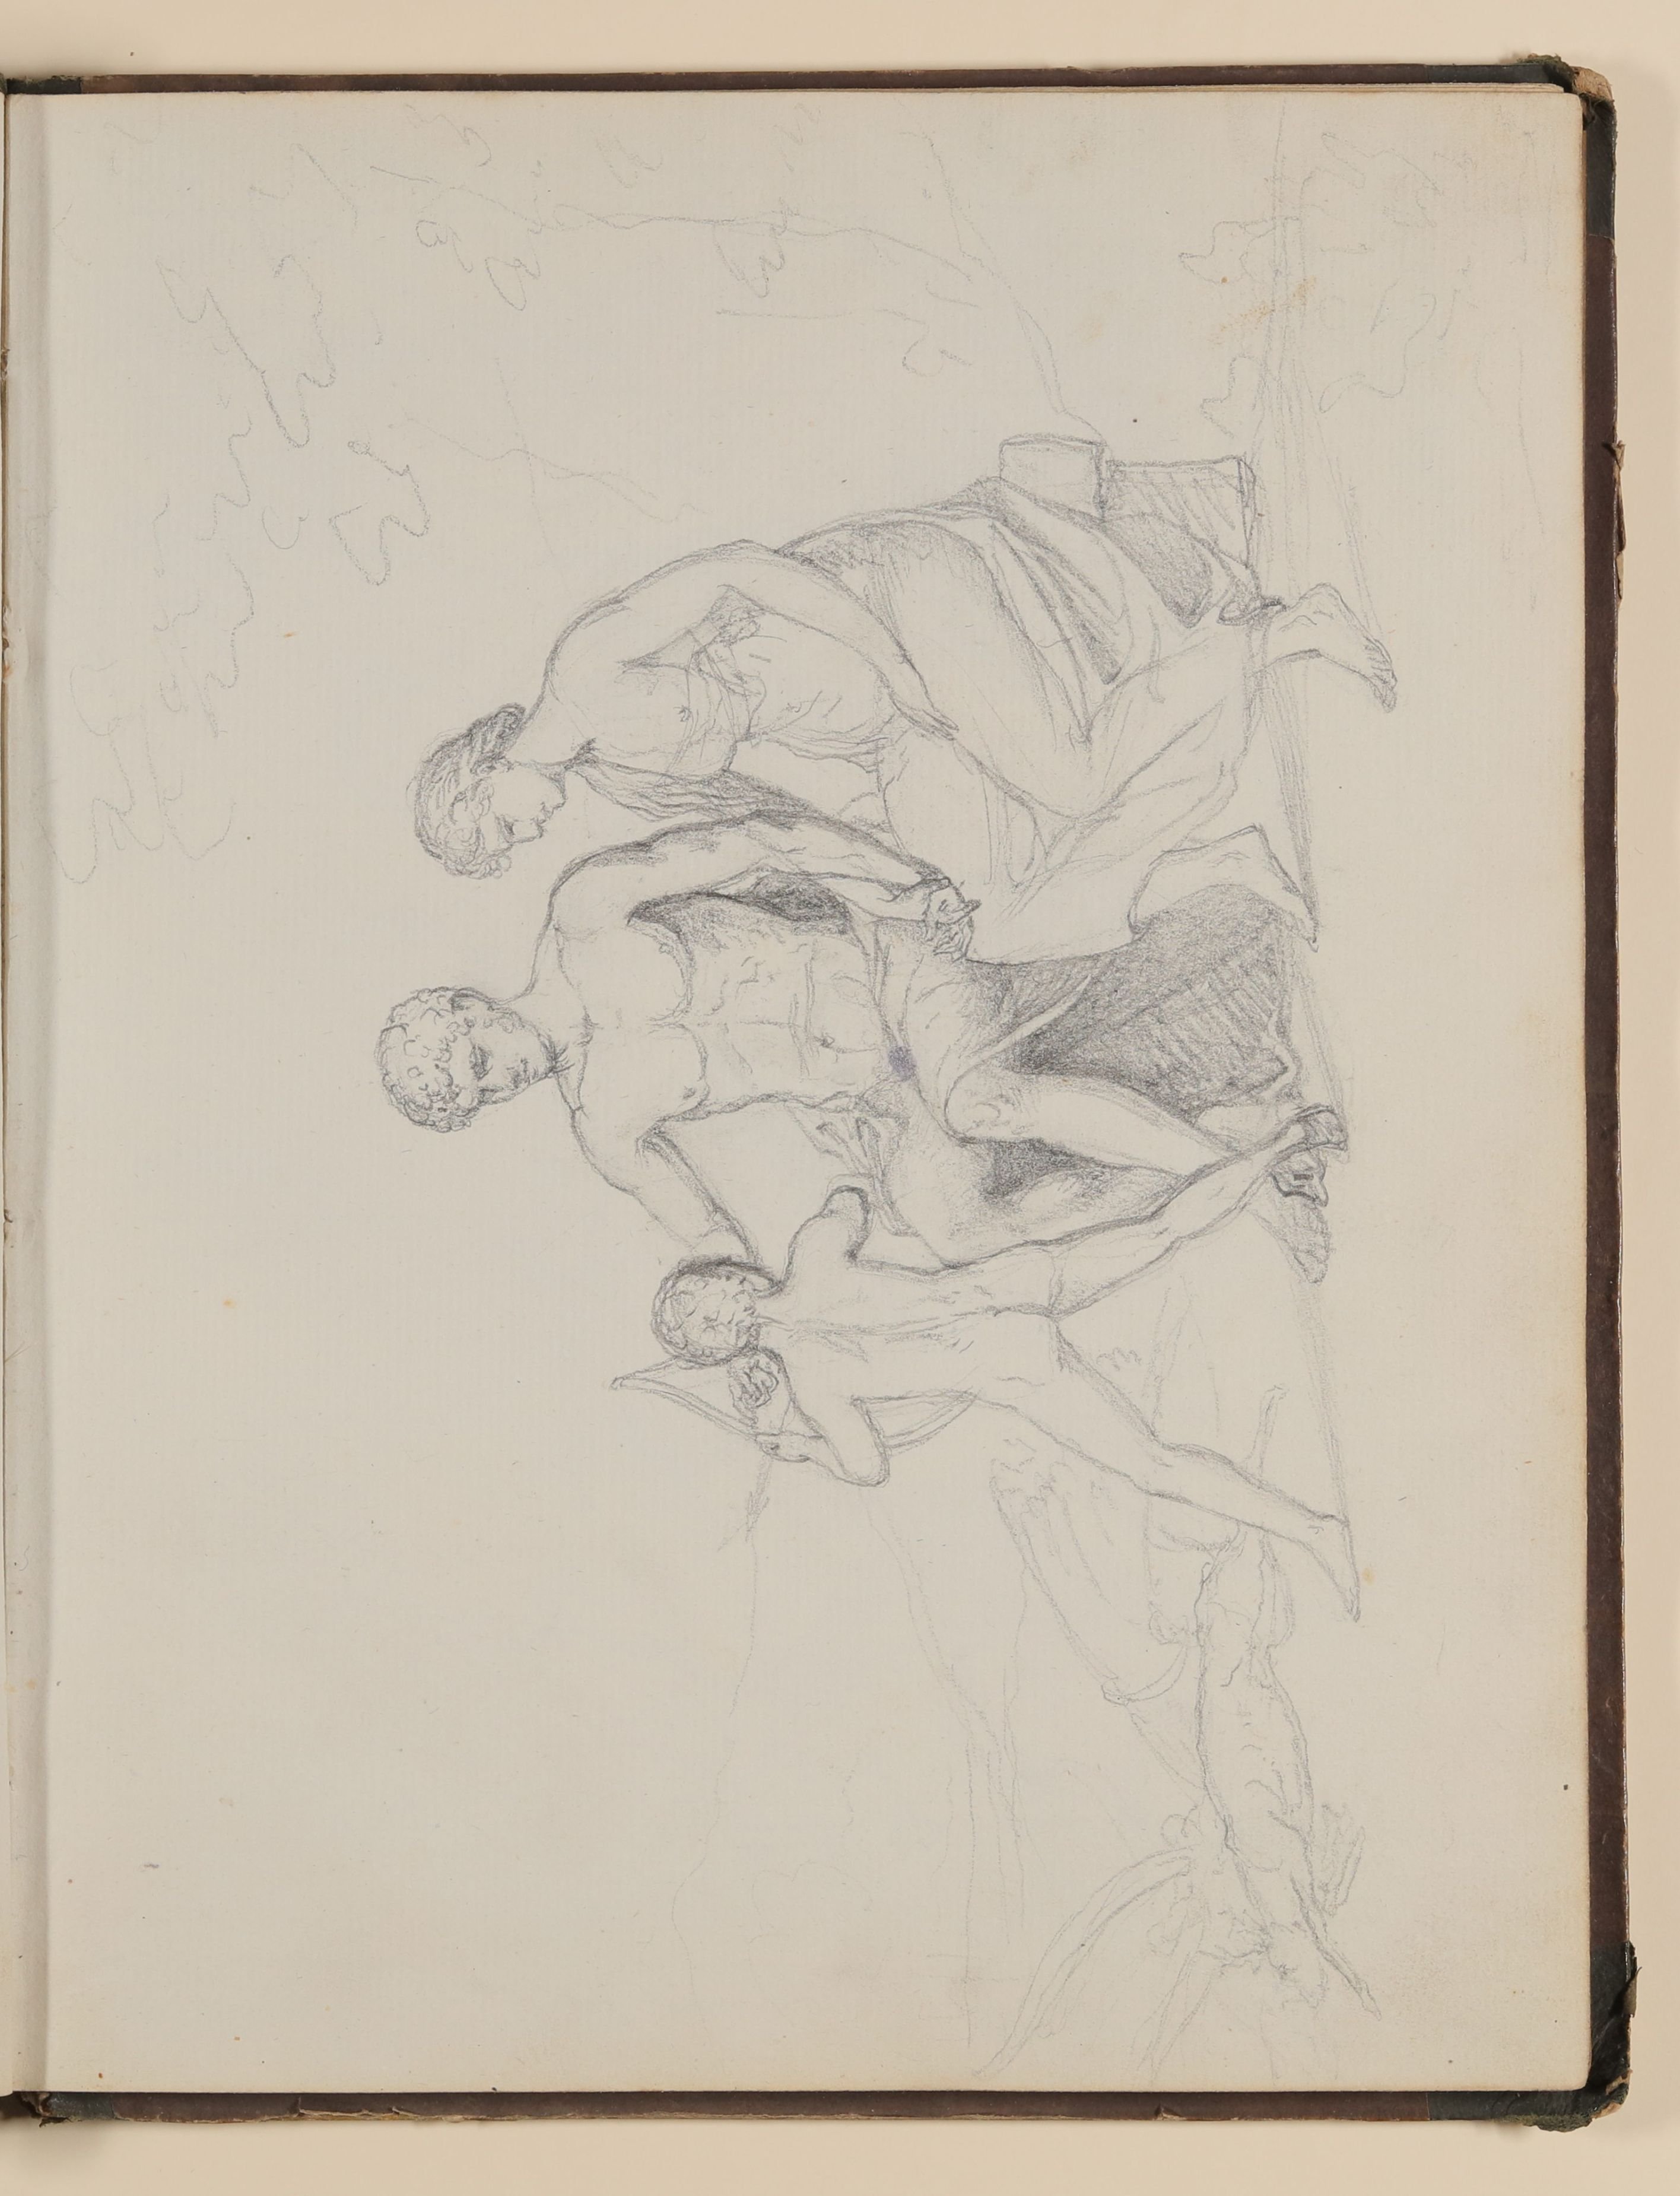 Antikisierende Szene mit Bogenschießendem Jungen [aus einem Skizzenbuch von unbekannter Hand, evtl. des Louis Thomassin] (Freies Deutsches Hochstift / Frankfurter Goethe-Museum CC BY-NC-SA)